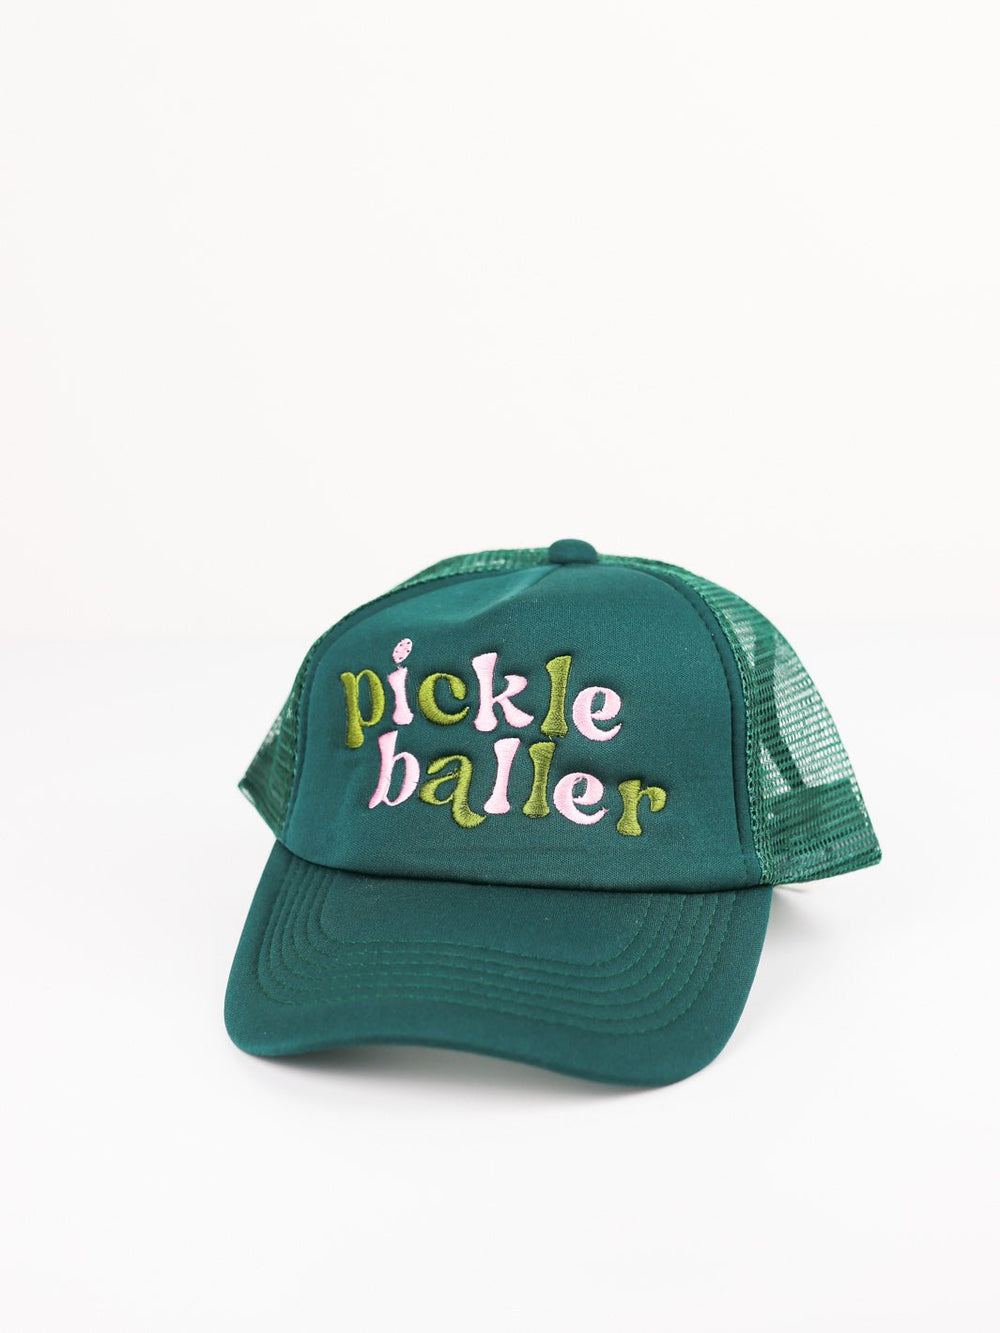 Pickleballer Trucker Hat - Heyday